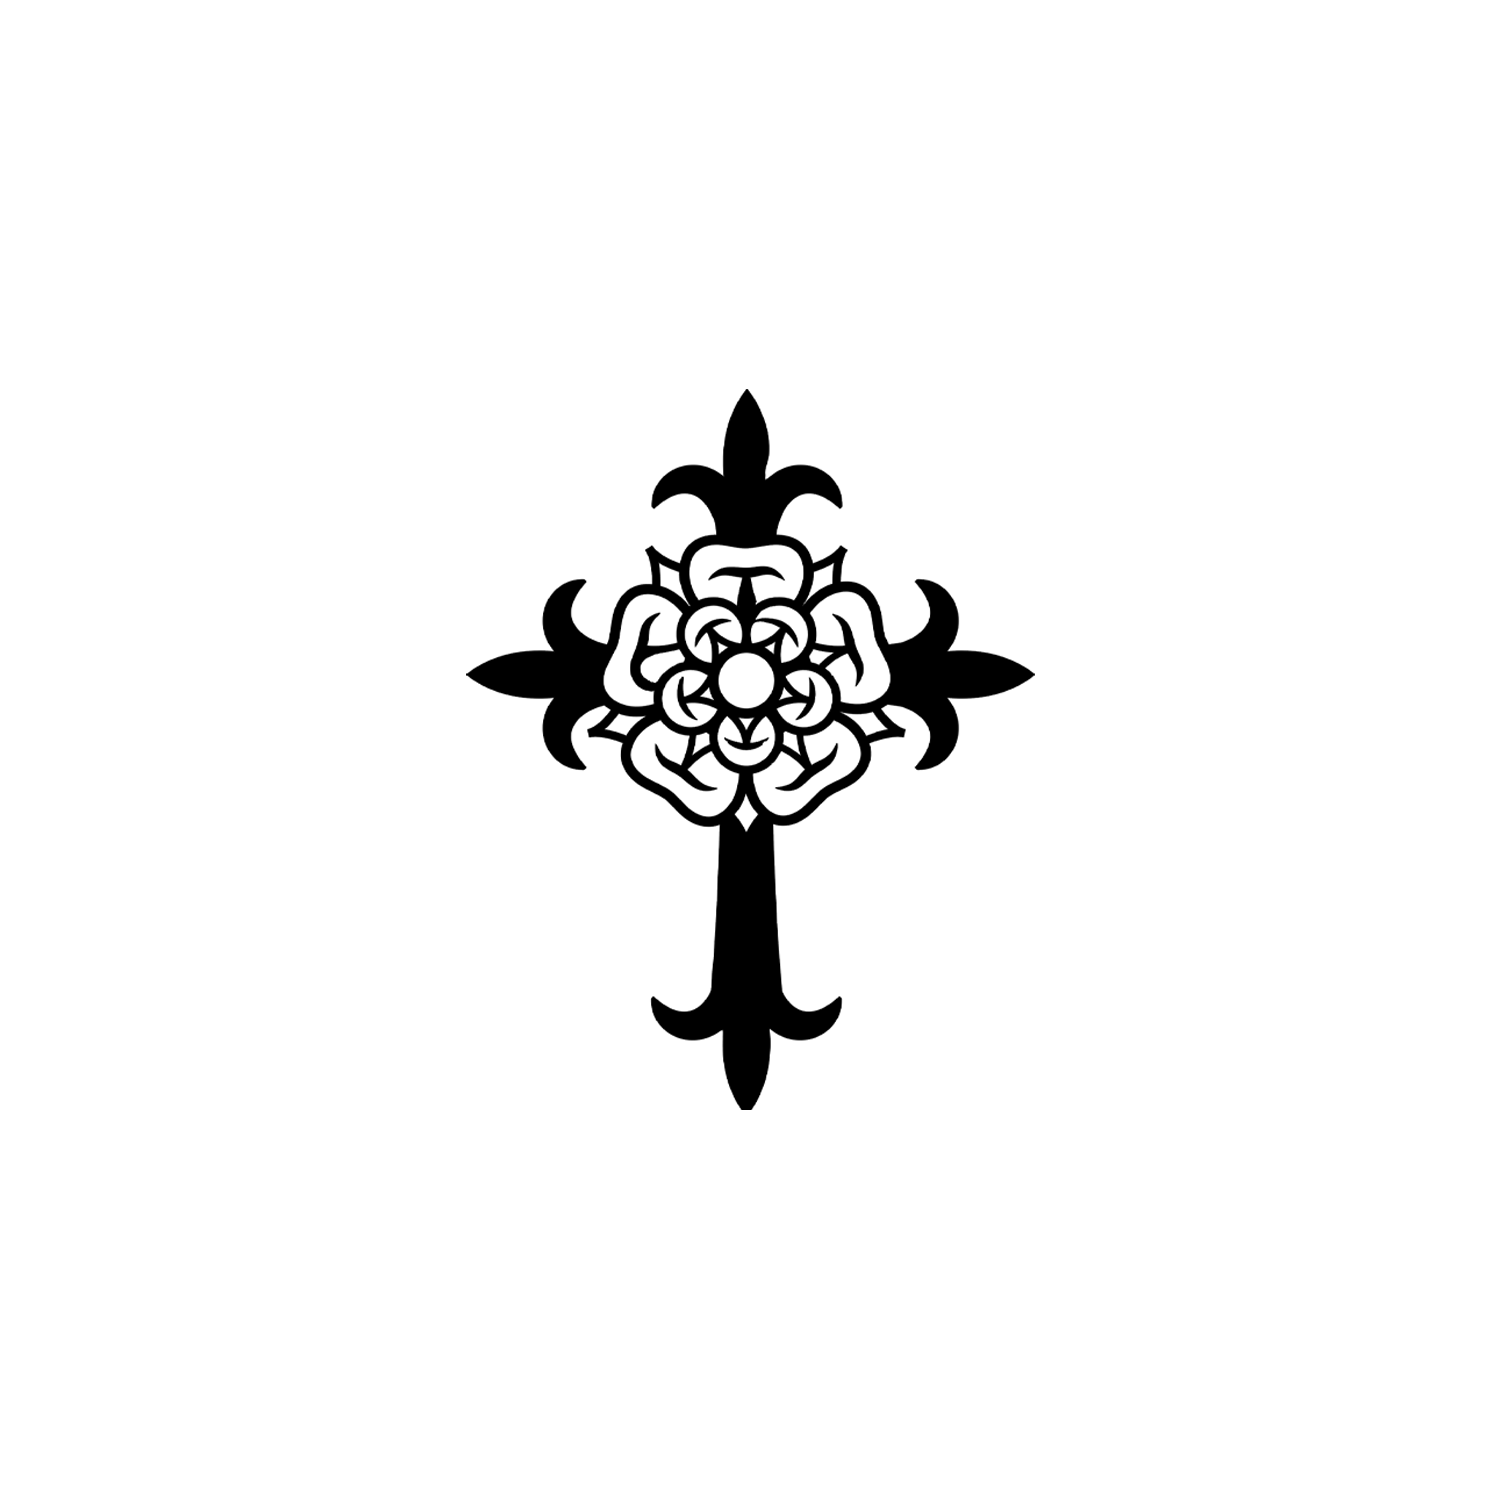 rose-cross-symbol